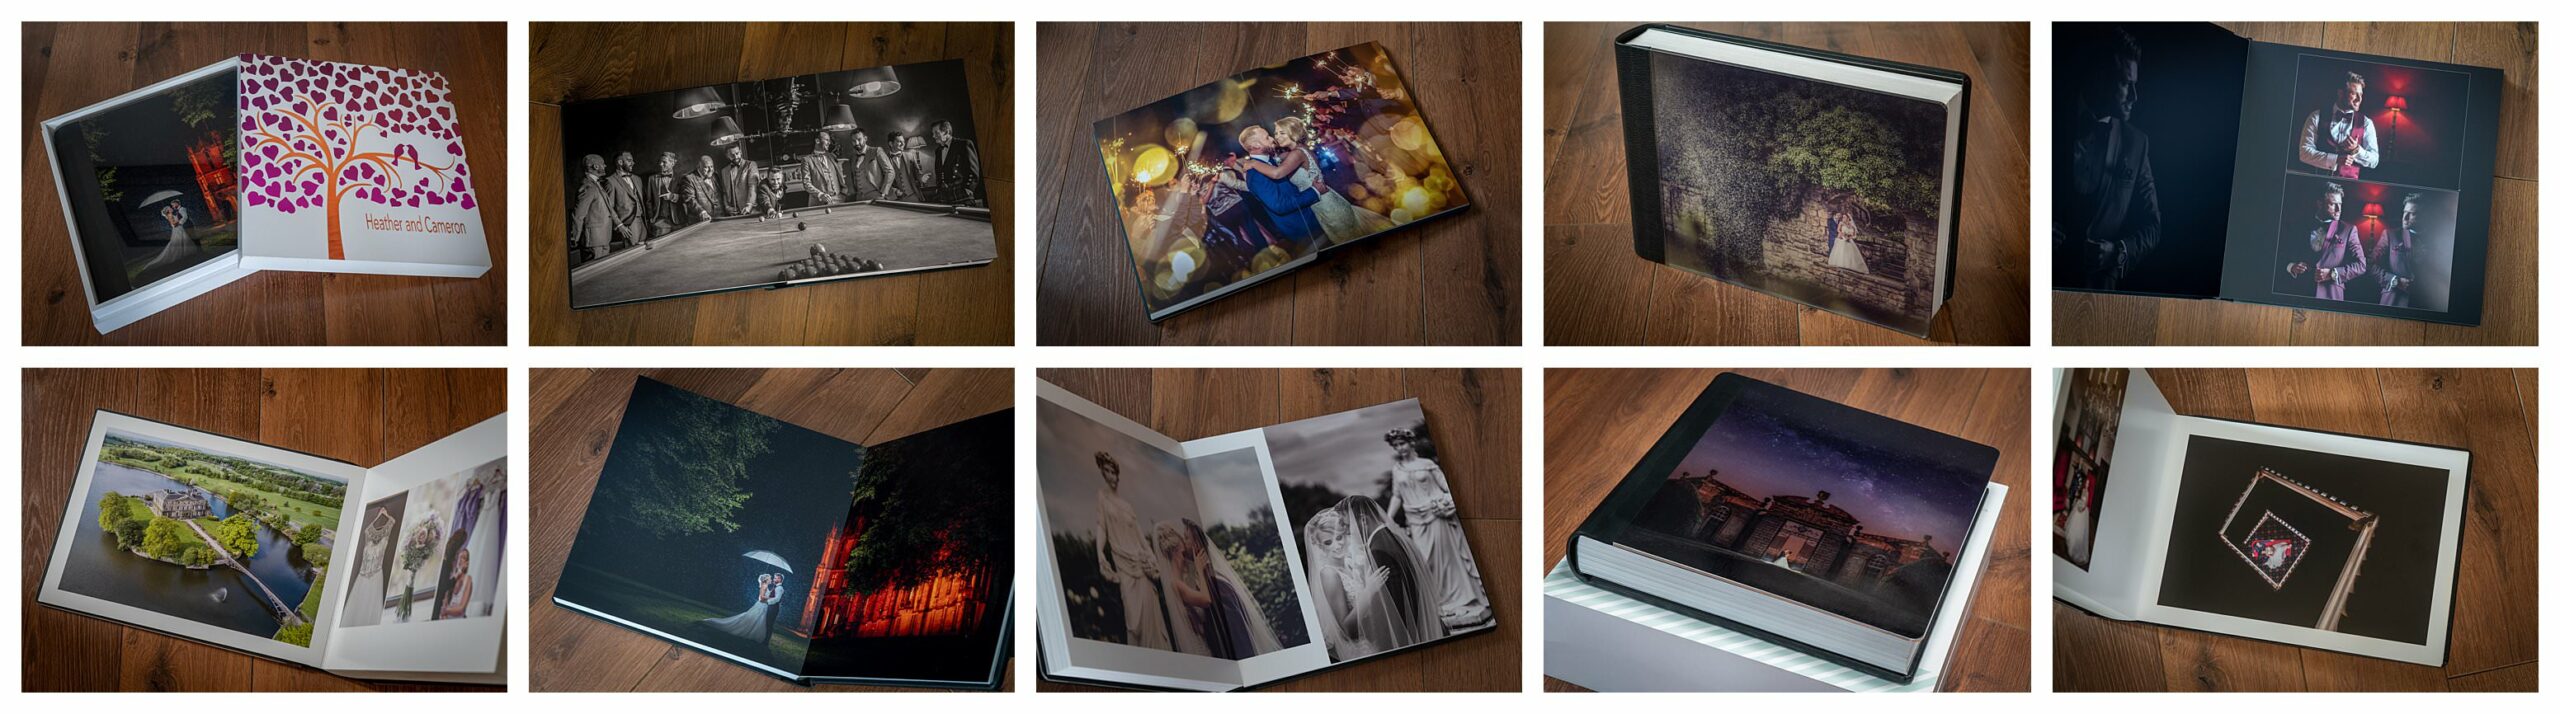 wedding photograph albums, handmade in iItaly